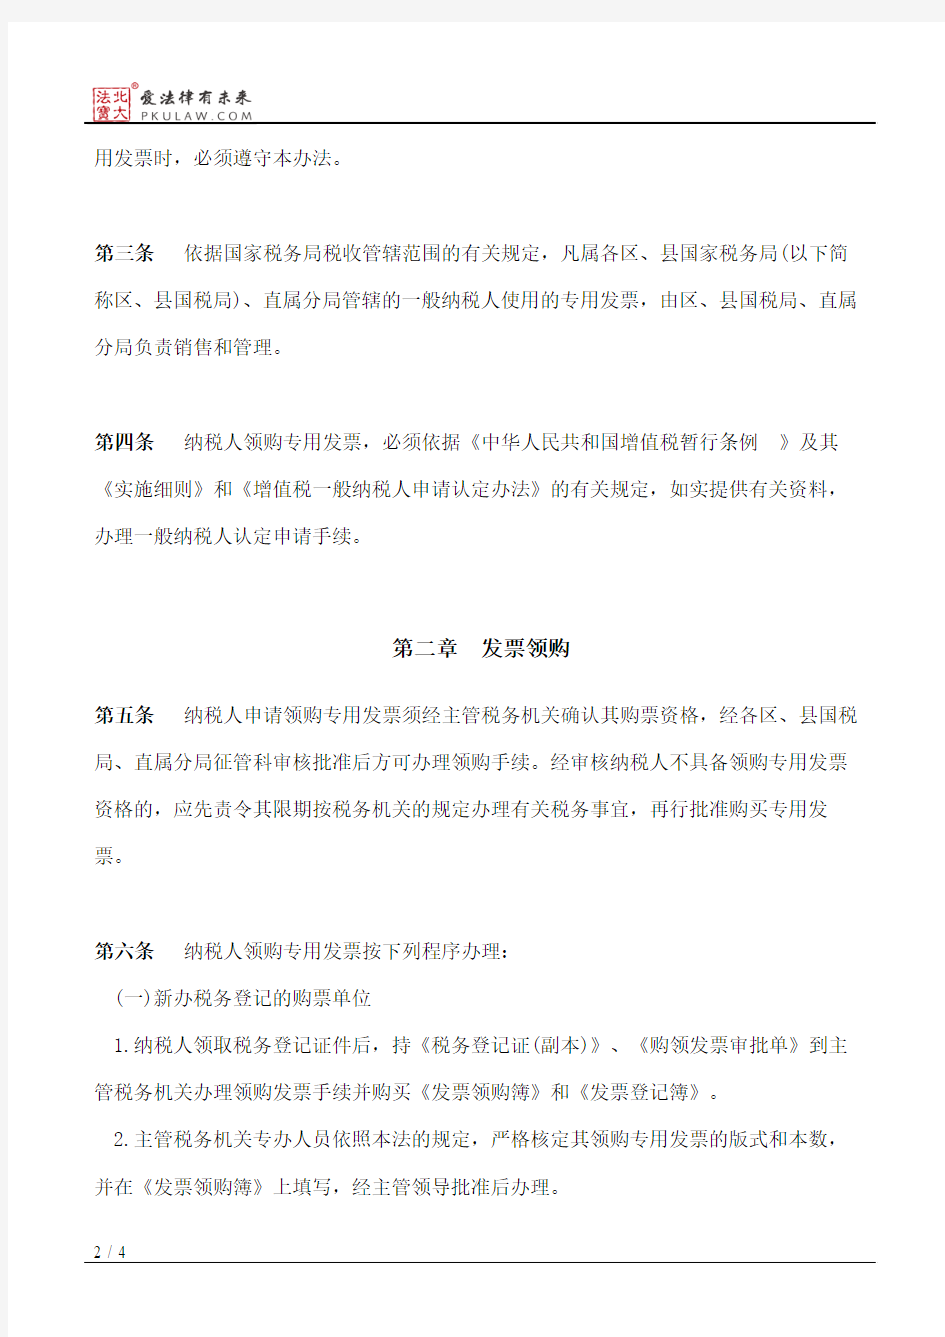 北京市国家税务局关于增值税专用发票领购、使用、保管的暂行办法